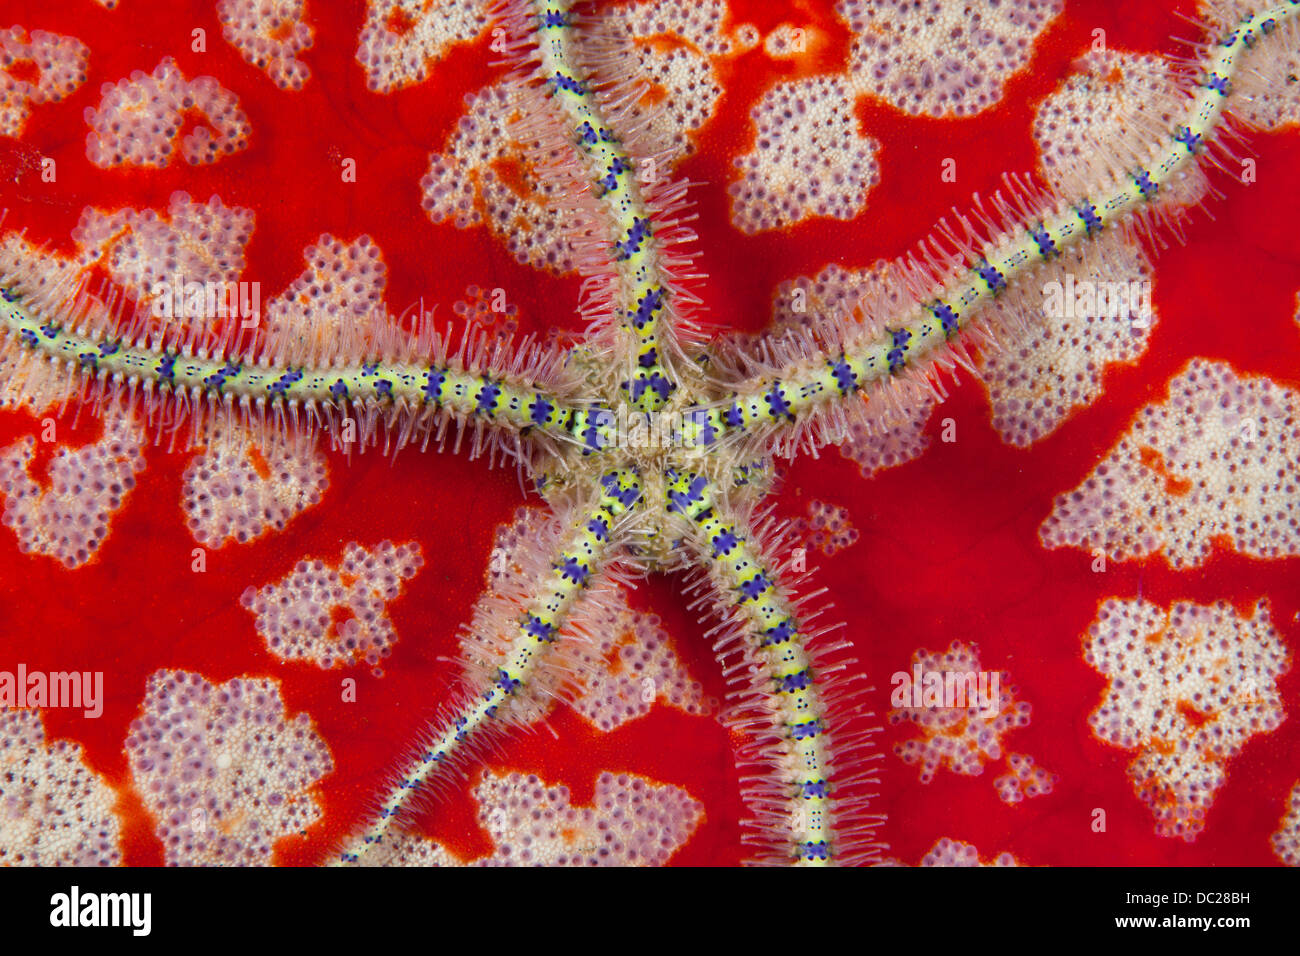 Brittlestar sur Pincushion Starfish, Ophiothrix sp., le Détroit de Lembeh, au nord de Sulawesi, Indonésie Banque D'Images